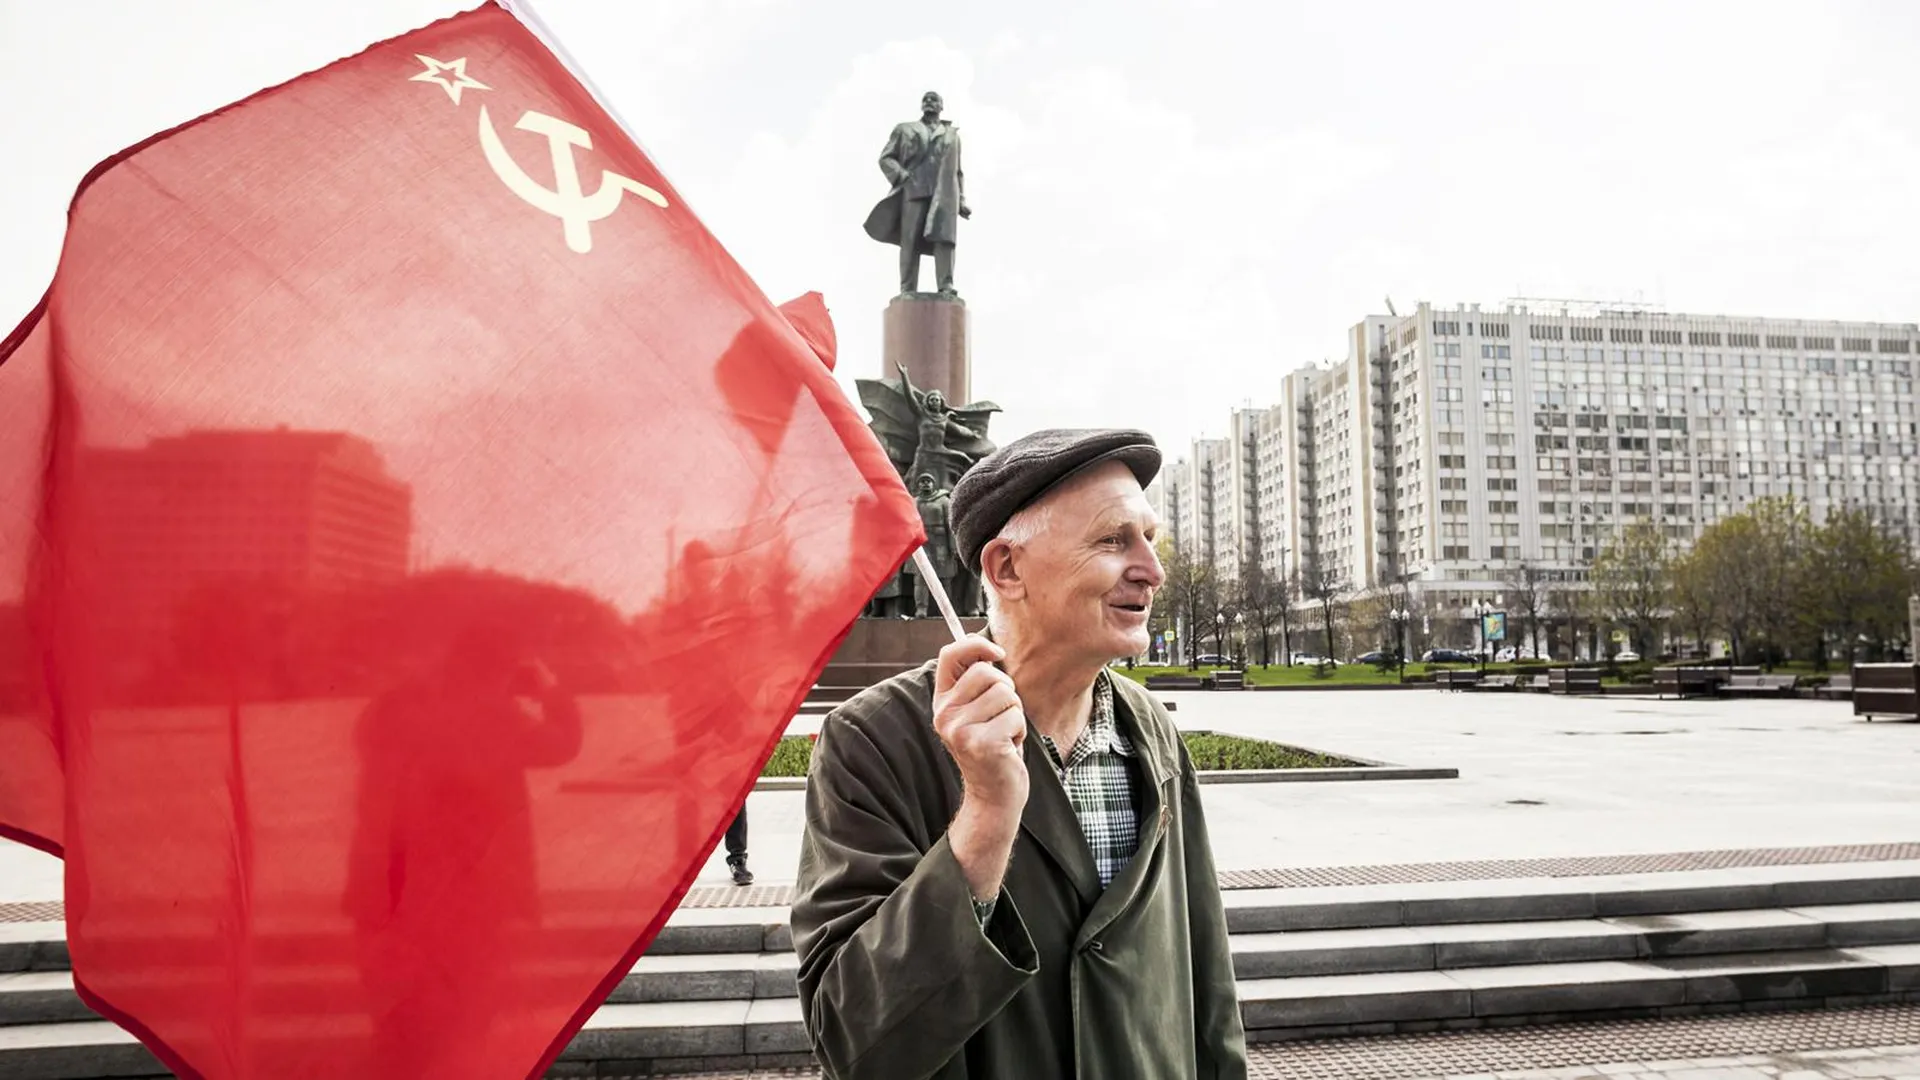 Мужчина с советским флагом на фоне памятника Ленину, Москва, 1 мая 2018 года. Фото: Celestino Arce